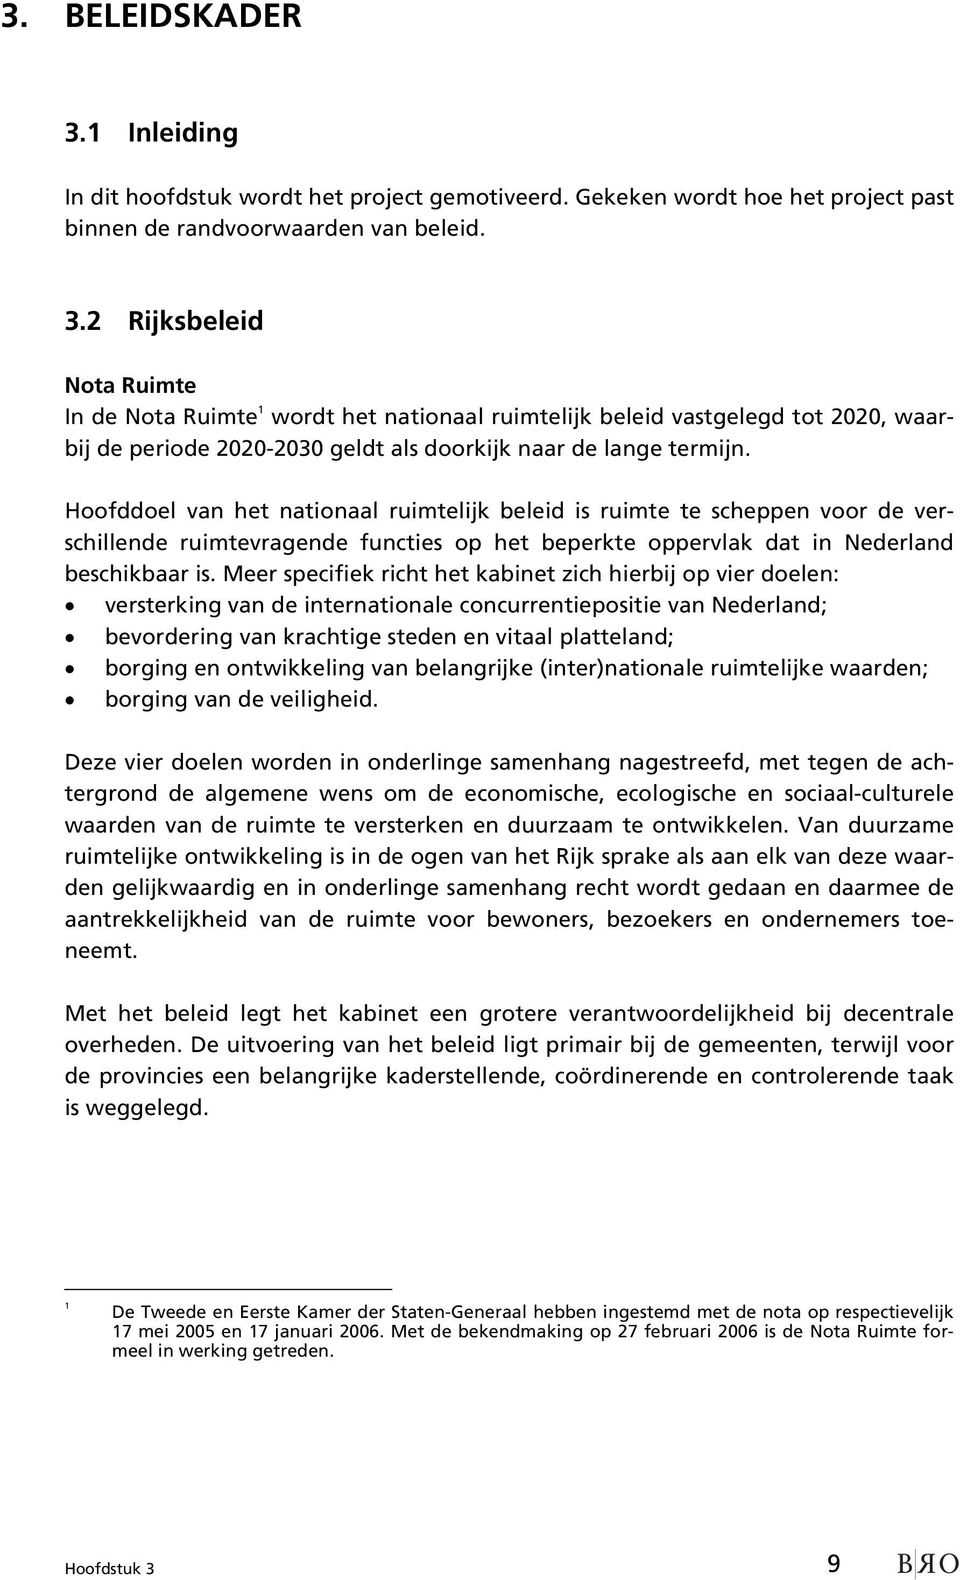 Meer specifiek richt het kabinet zich hierbij op vier doelen: versterking van de internationale concurrentiepositie van Nederland; bevordering van krachtige steden en vitaal platteland; borging en